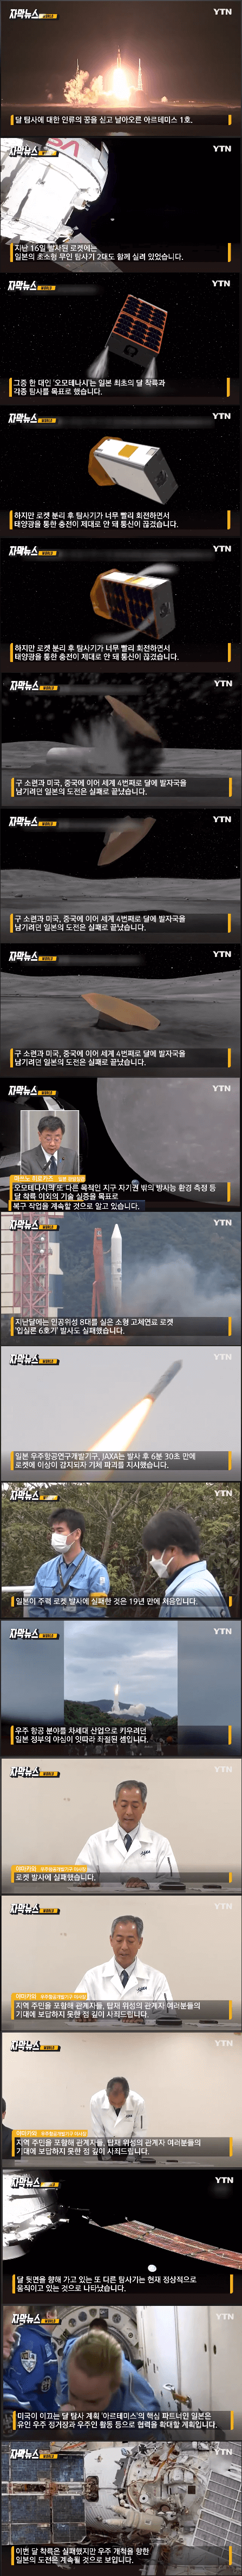 일본과 한국의 우주개발상황